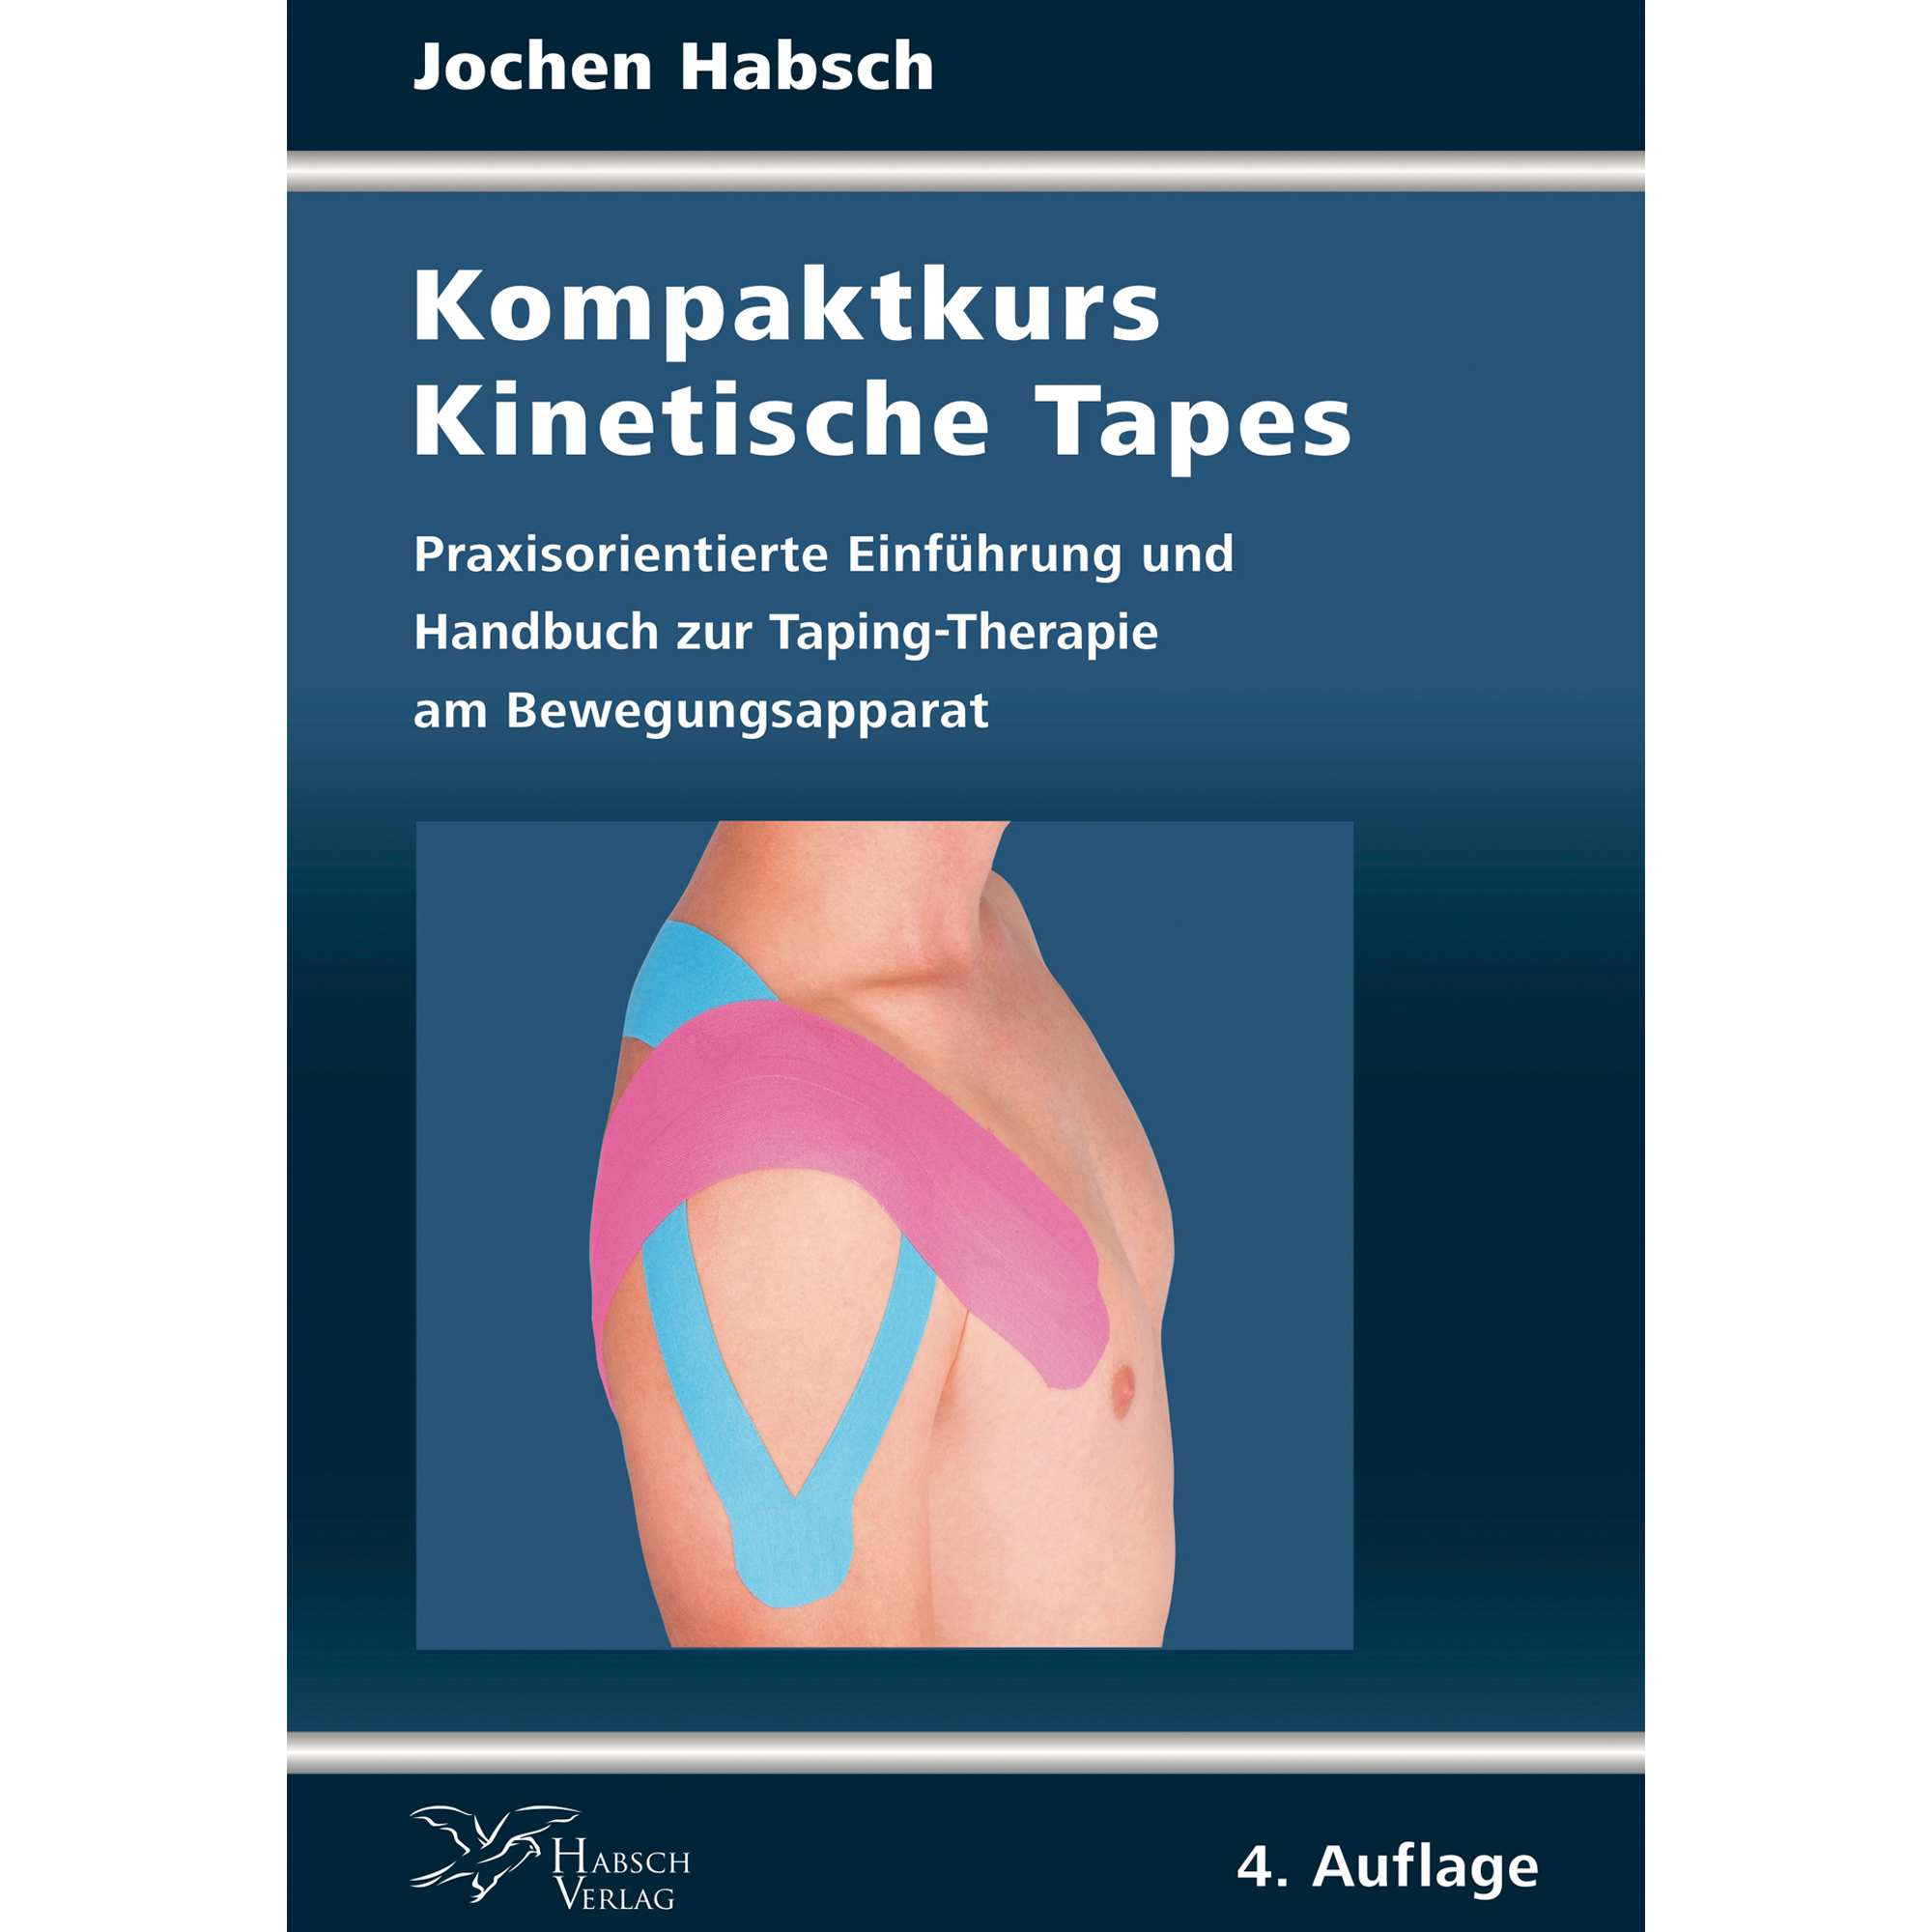 Buch Kompaktkurs Kinetische Tapes von Jochen Habsch 4. Auflage